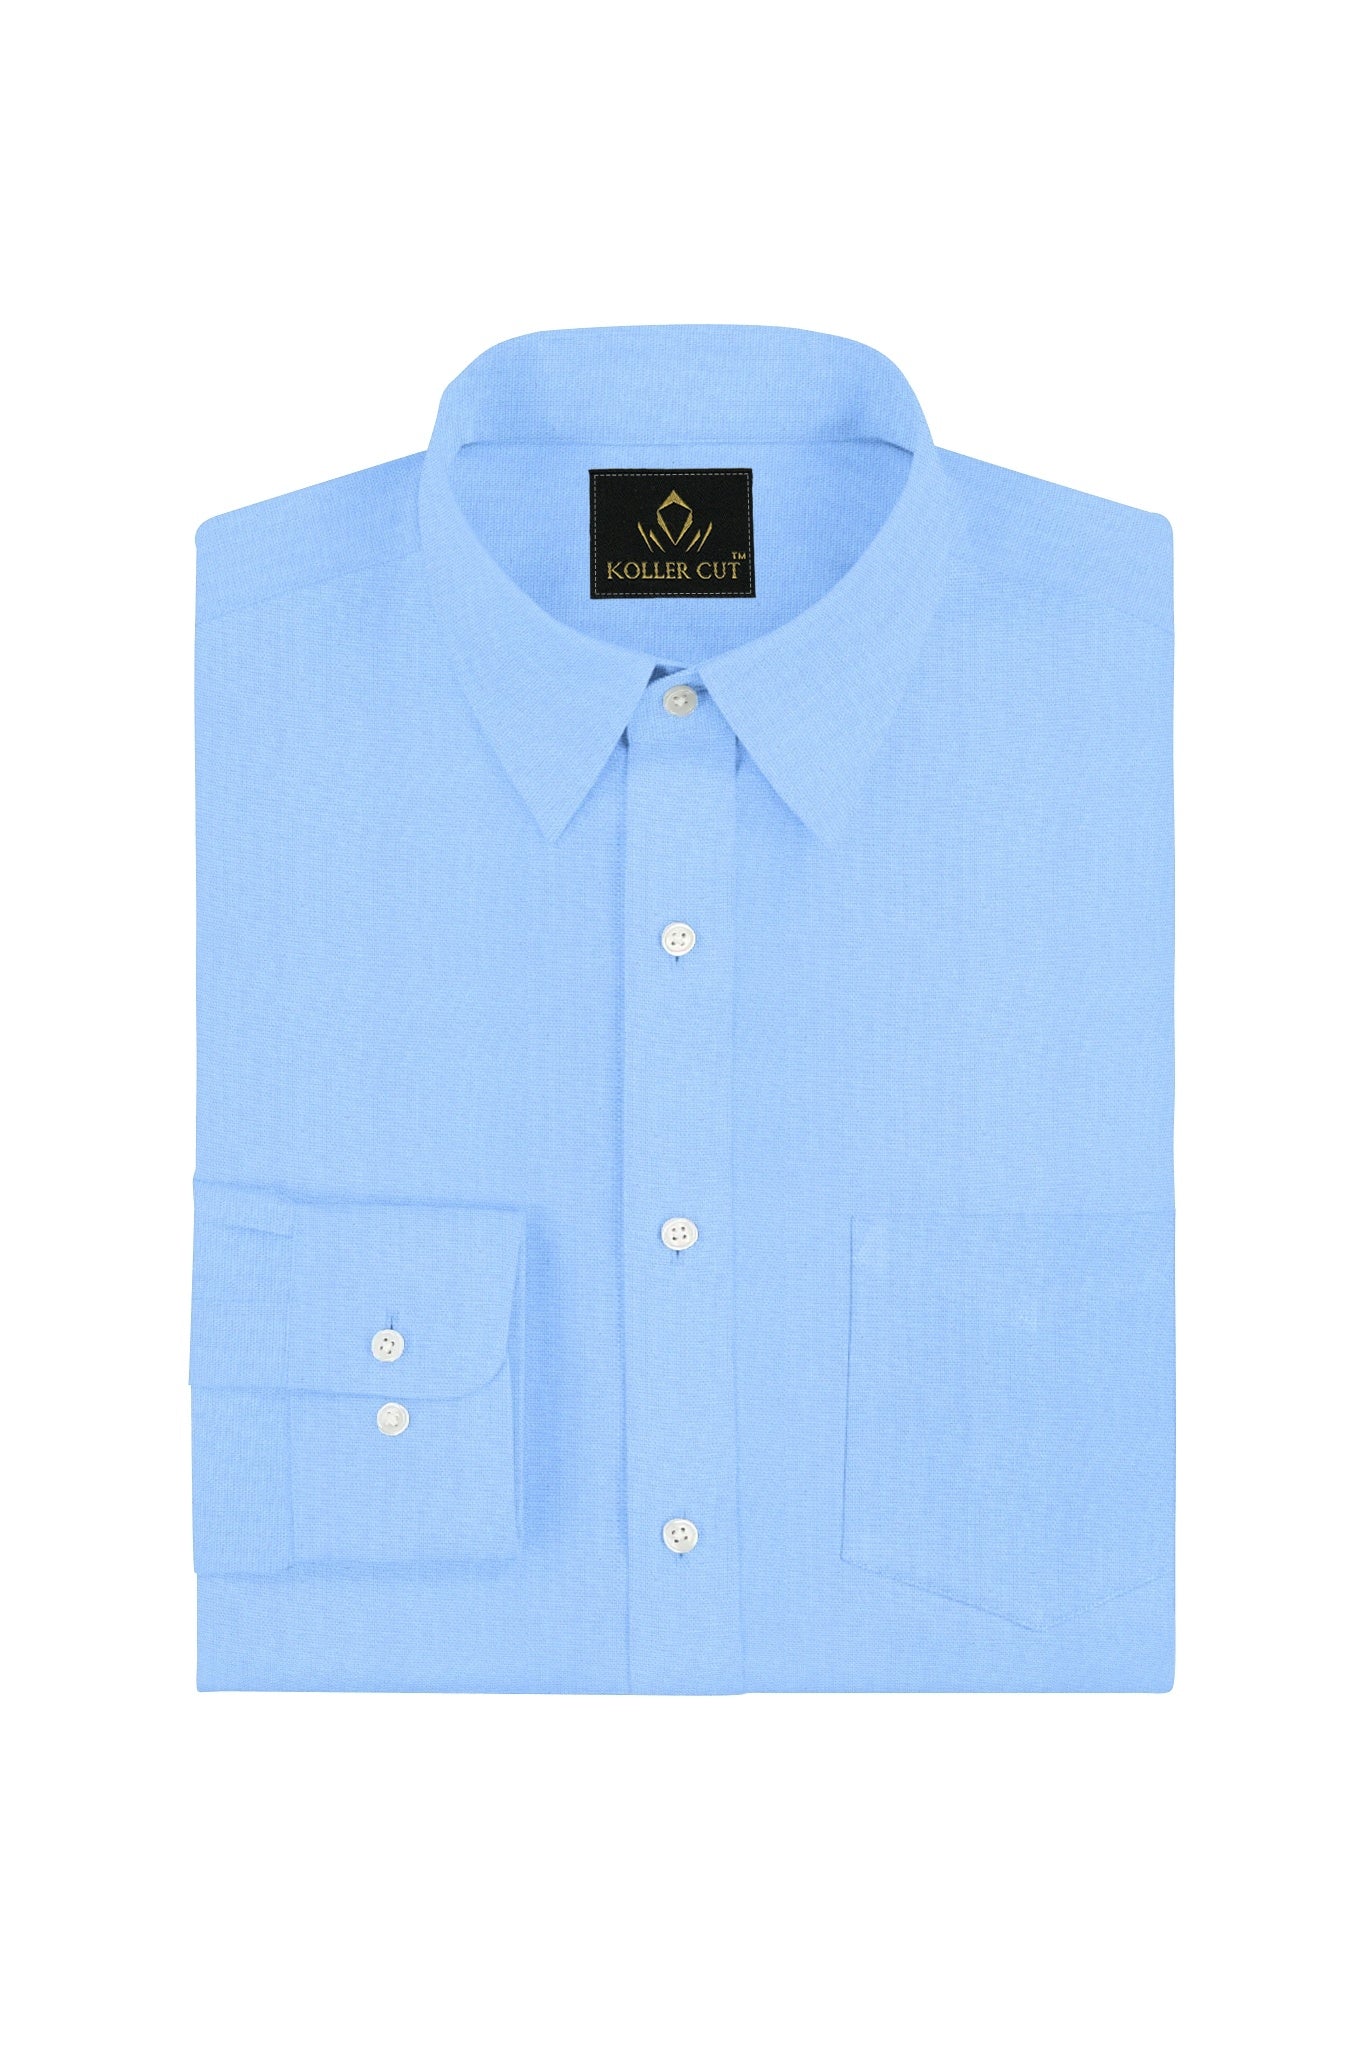 Placid Blue Solid Premium Modal Cotton Shirt